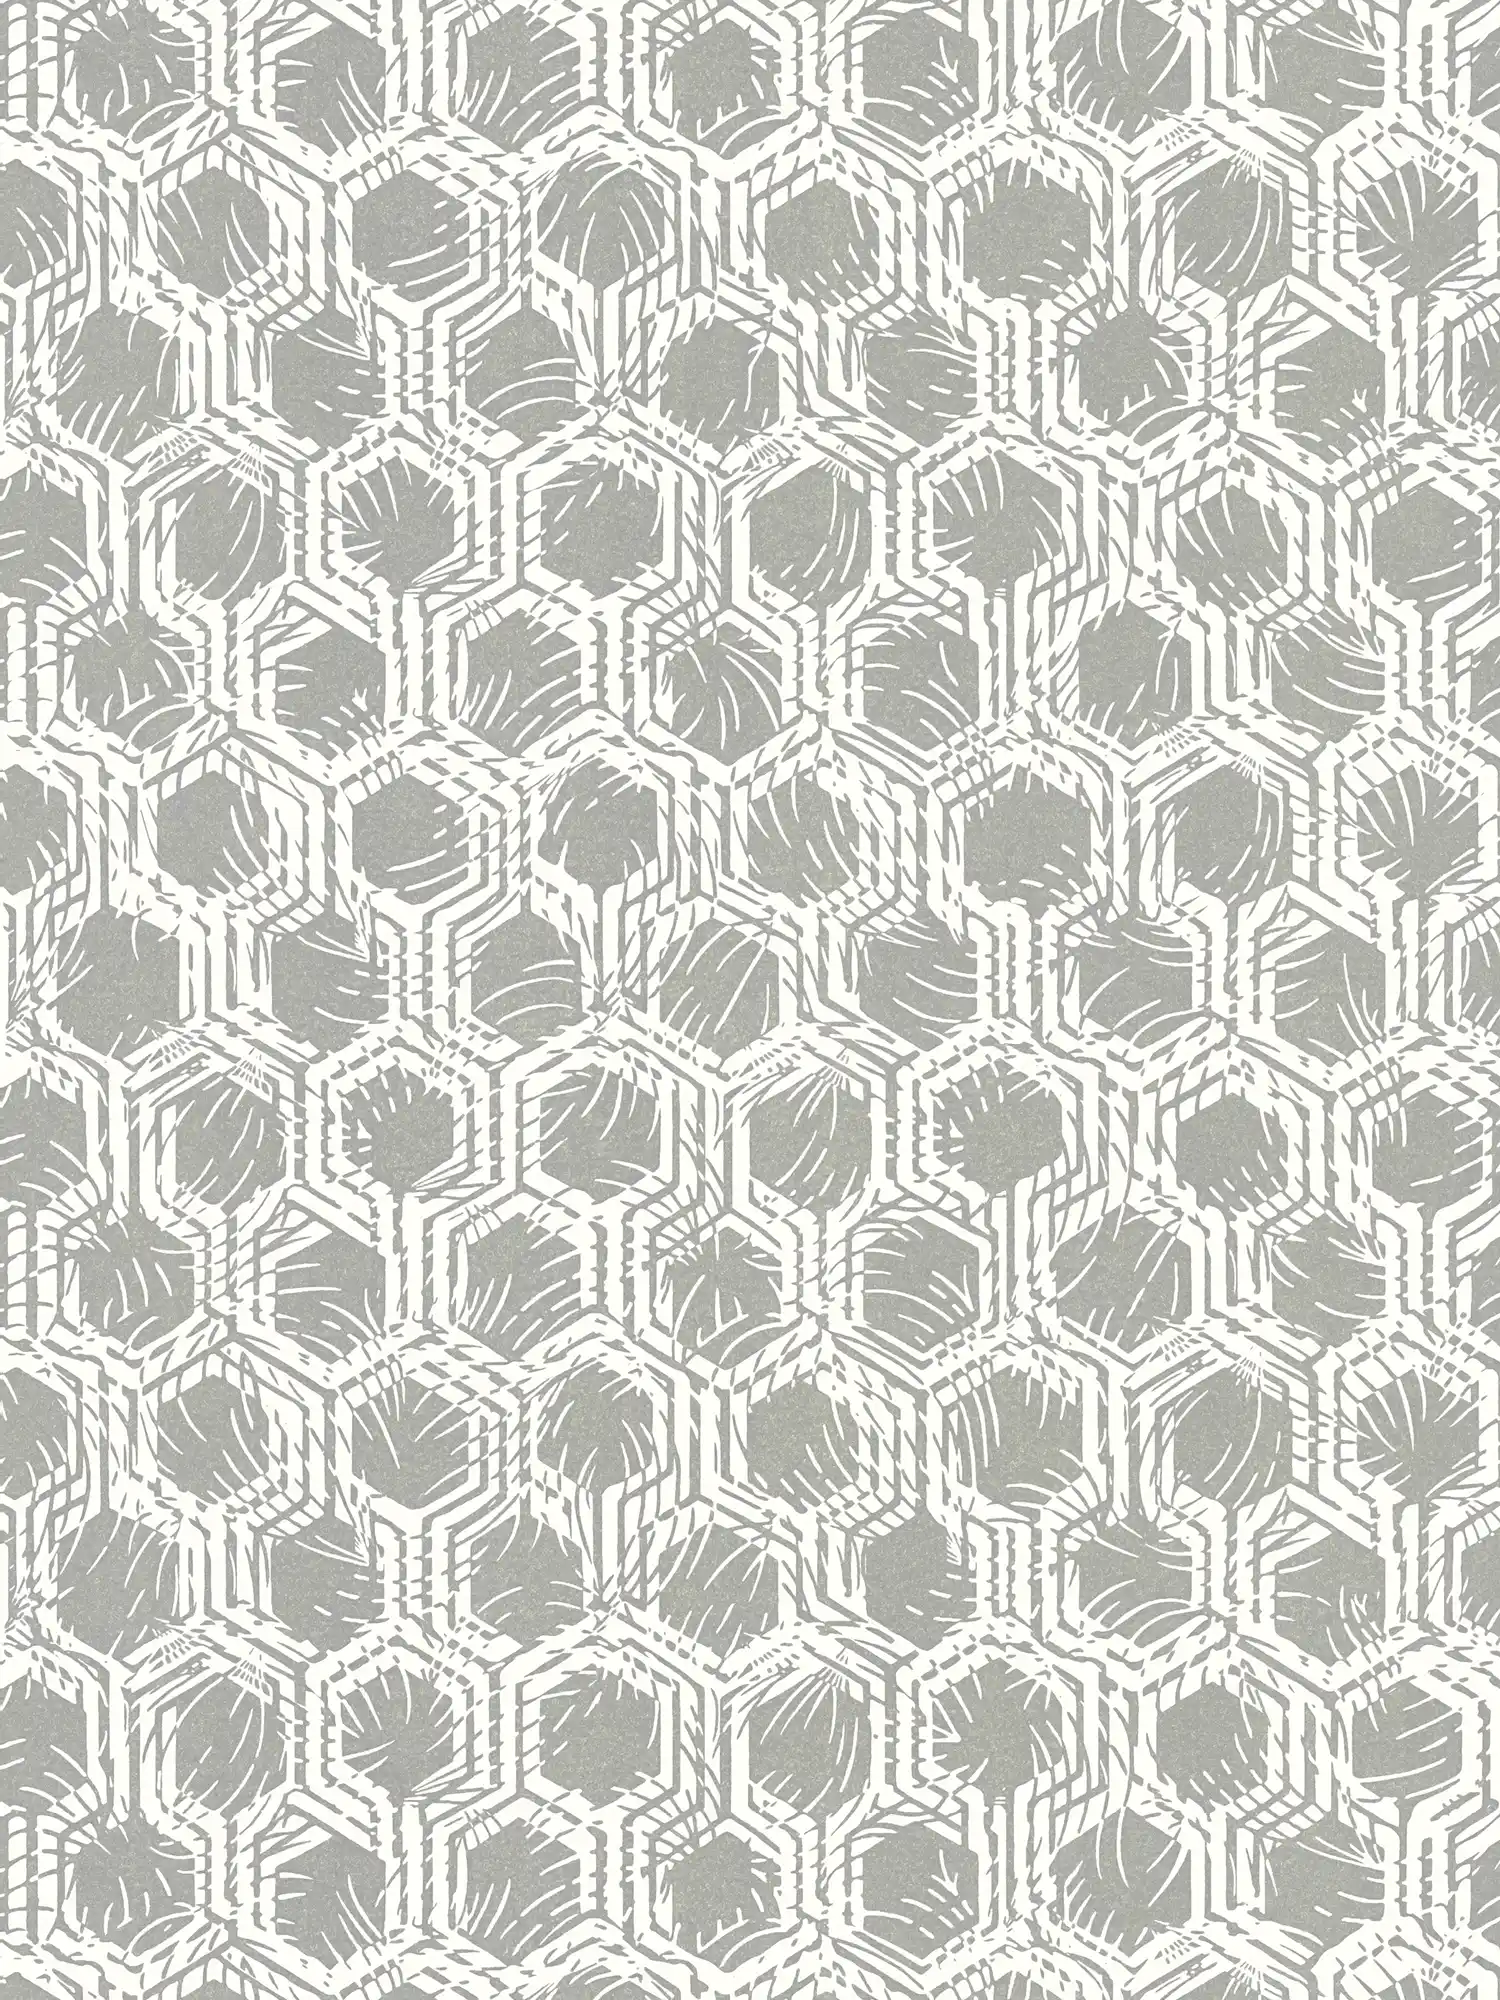 Geometrisch patroonbehang met metallic kleuren - zilver, wit
